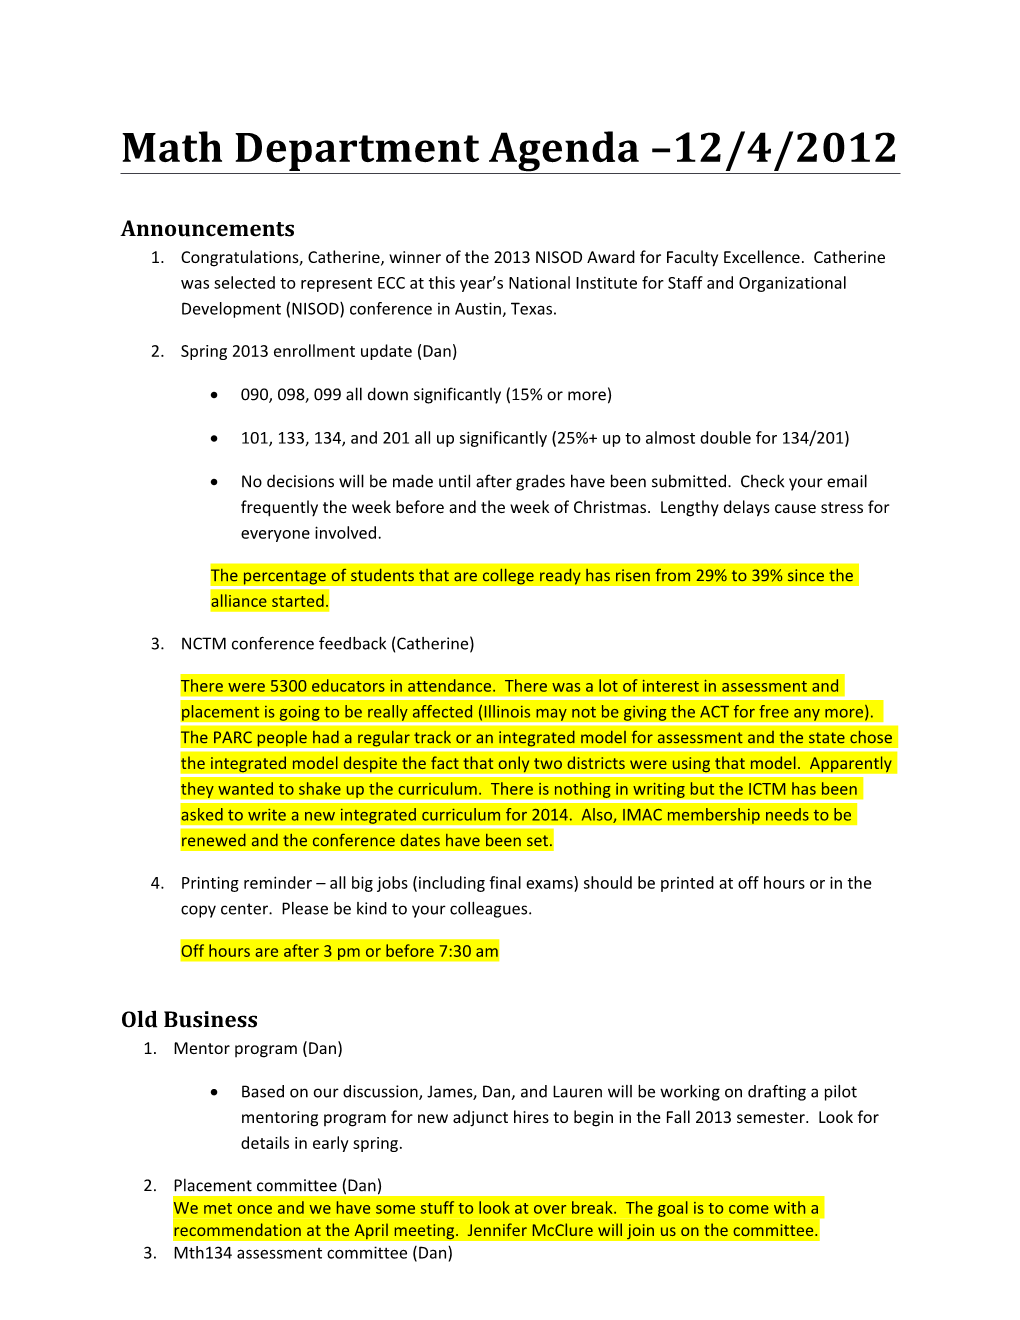 Math Department Agenda 12/4/2012